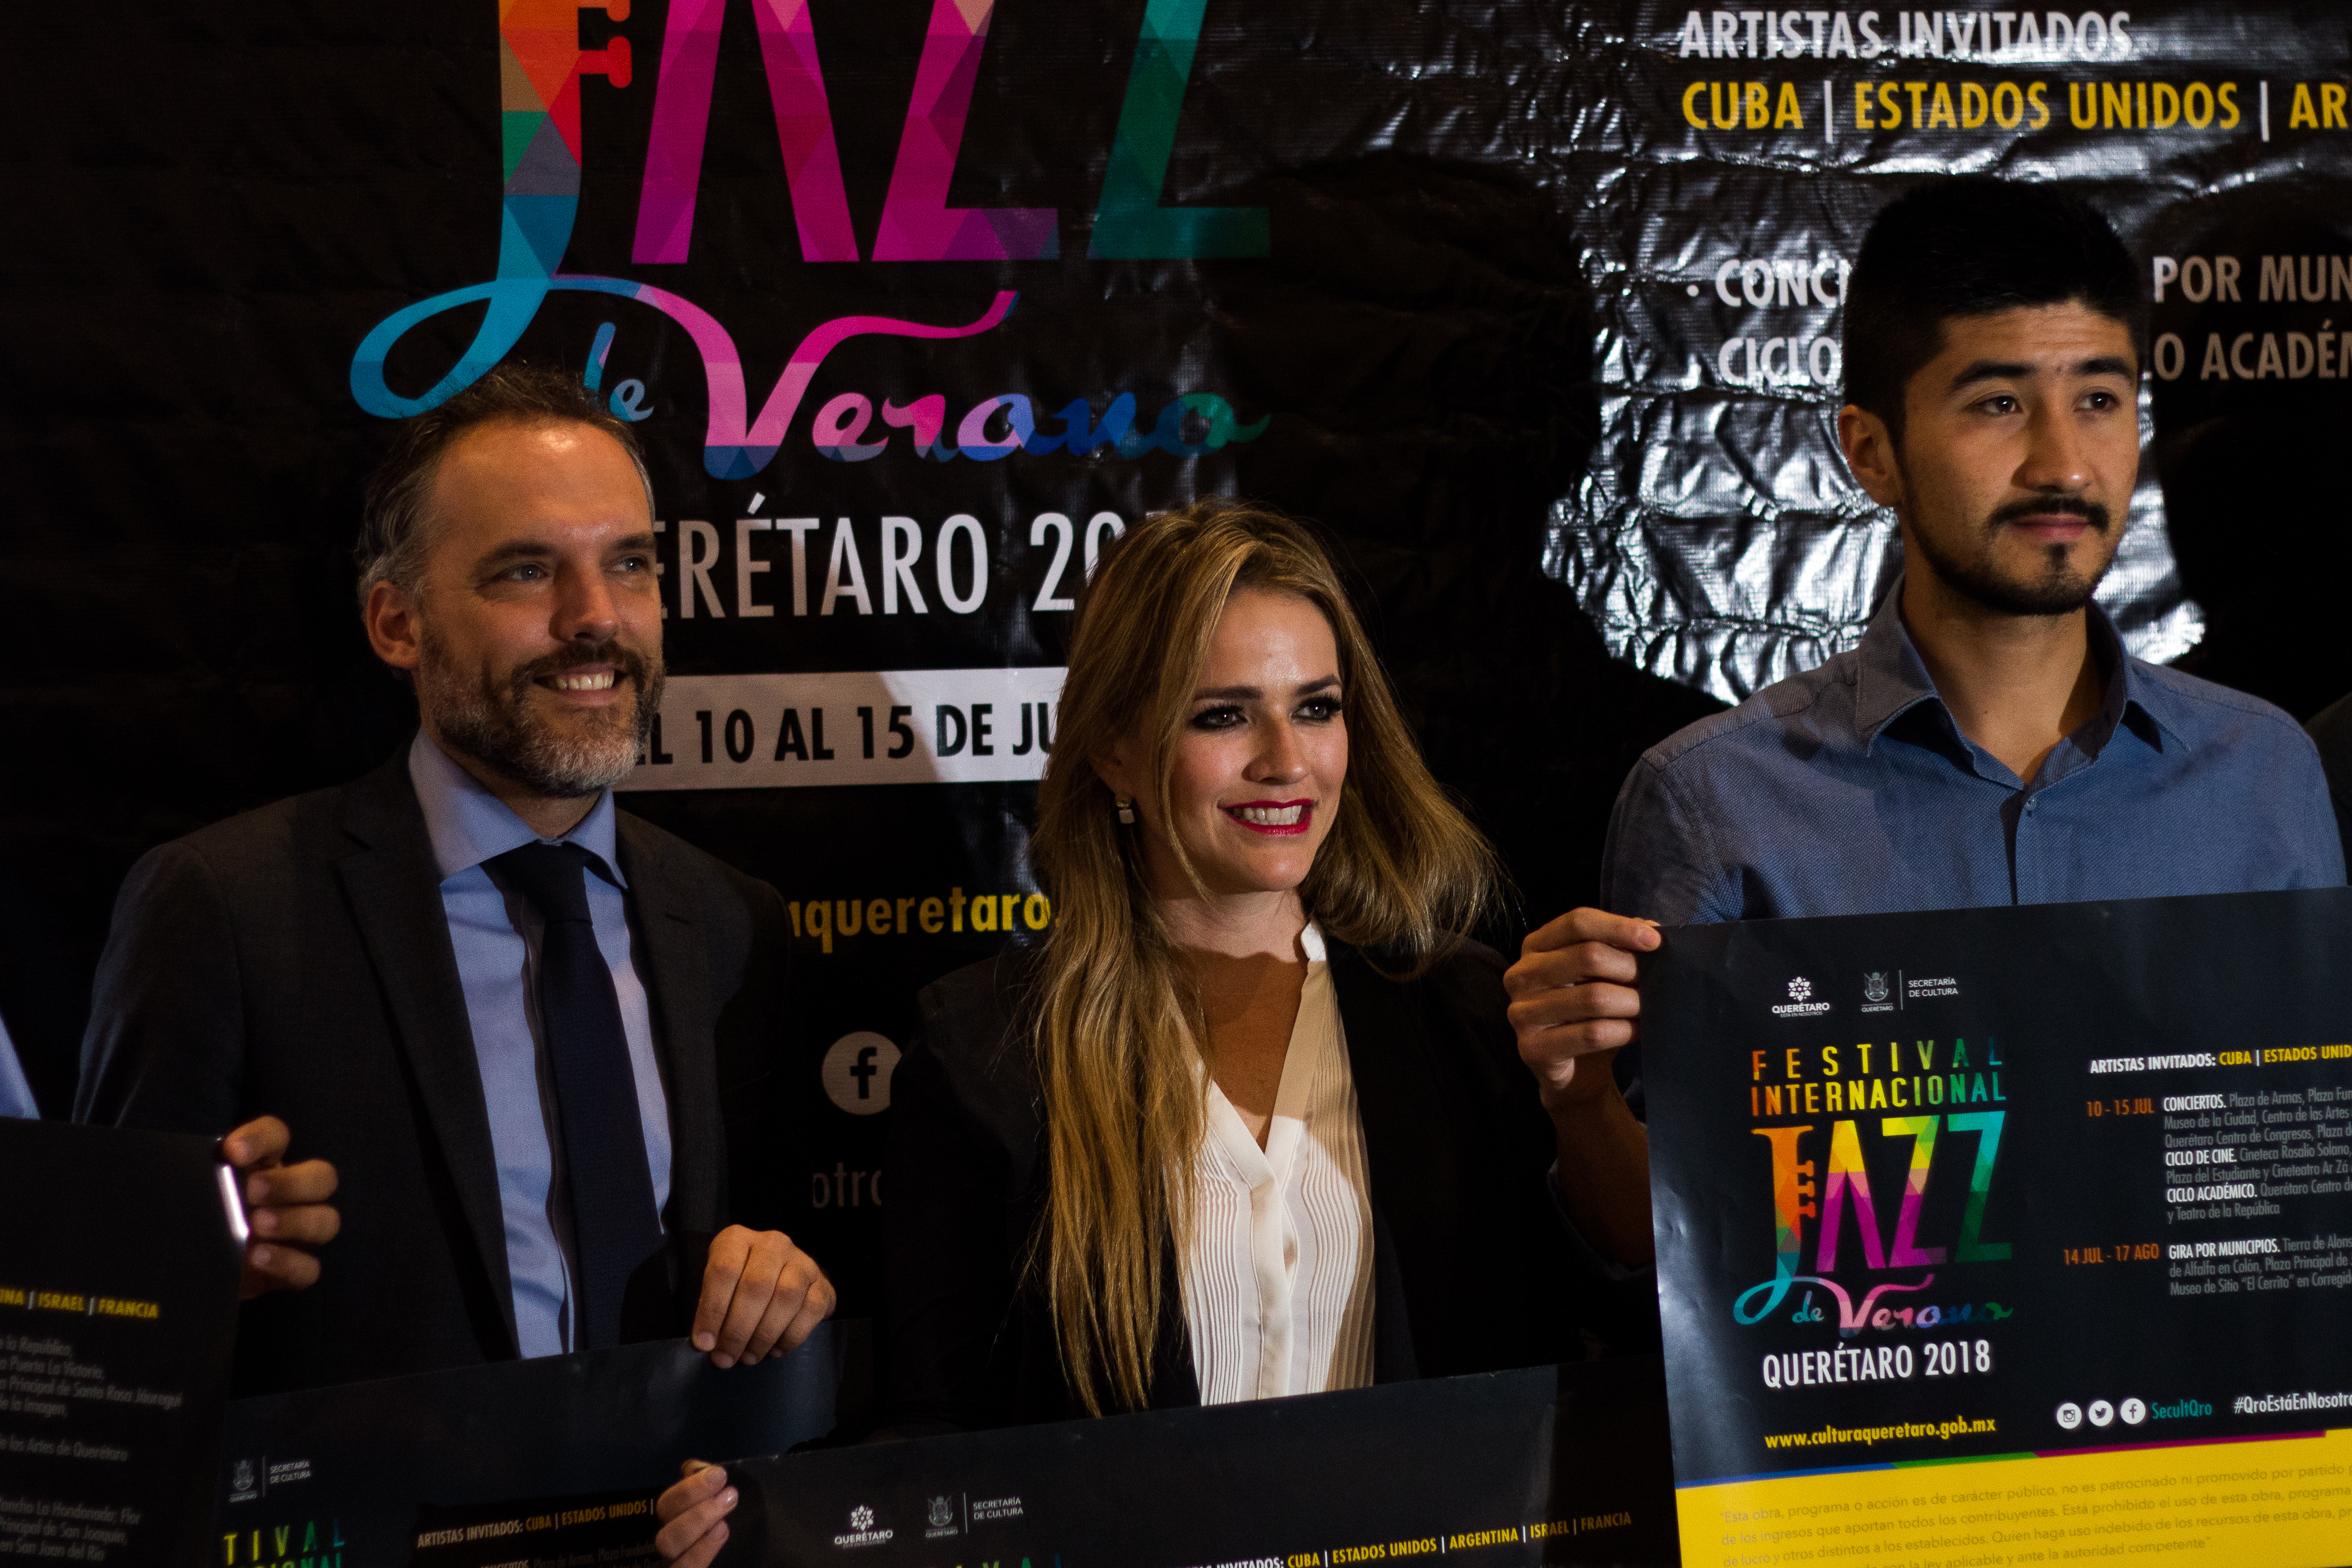  Arturo Sandoval inaugurará el Festival Internacional Jazz de Verano 2018